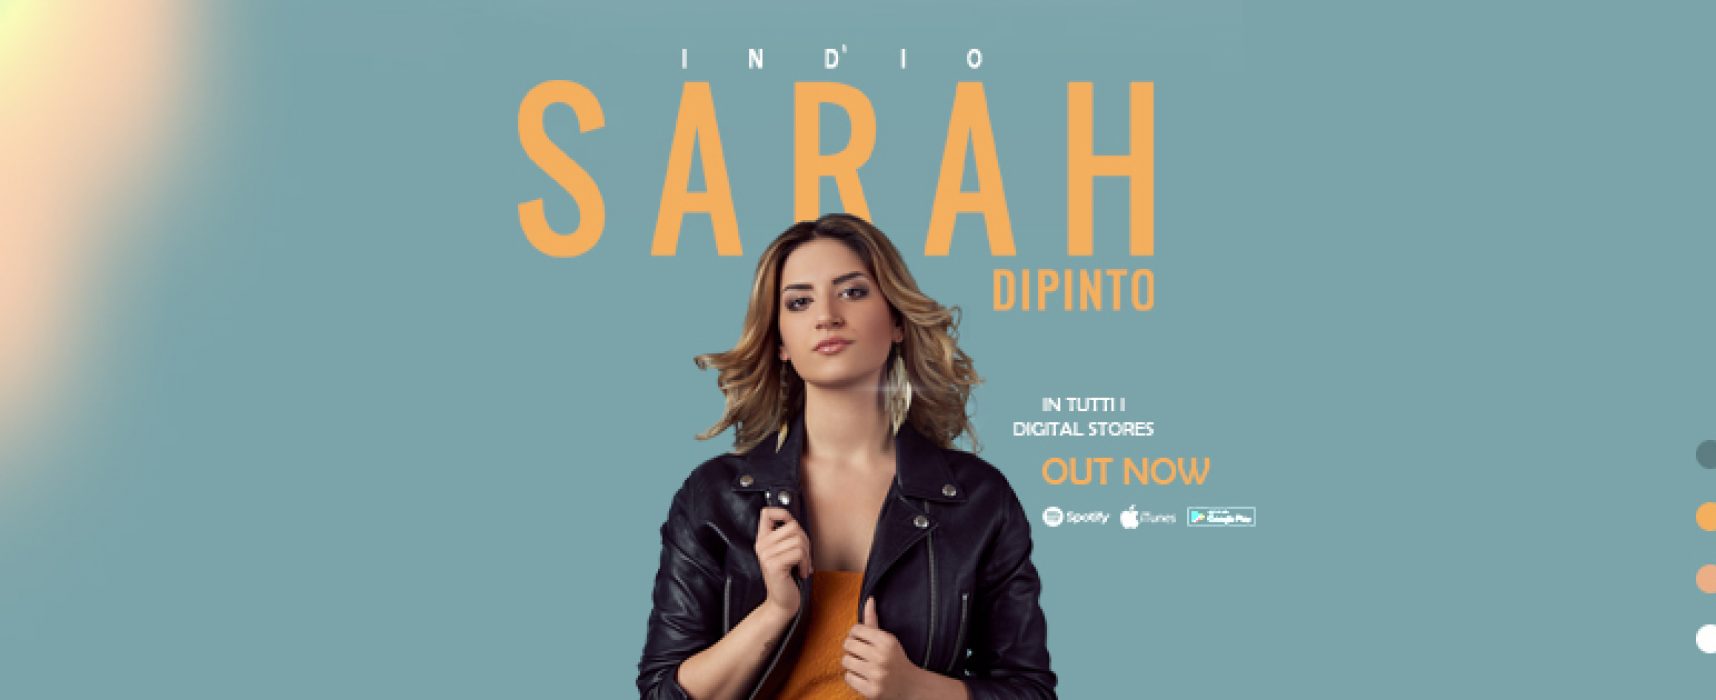 “Ind’io”, pubblicato secondo singolo della cantautrice biscegliese Sarah Di Pinto / VIDEO